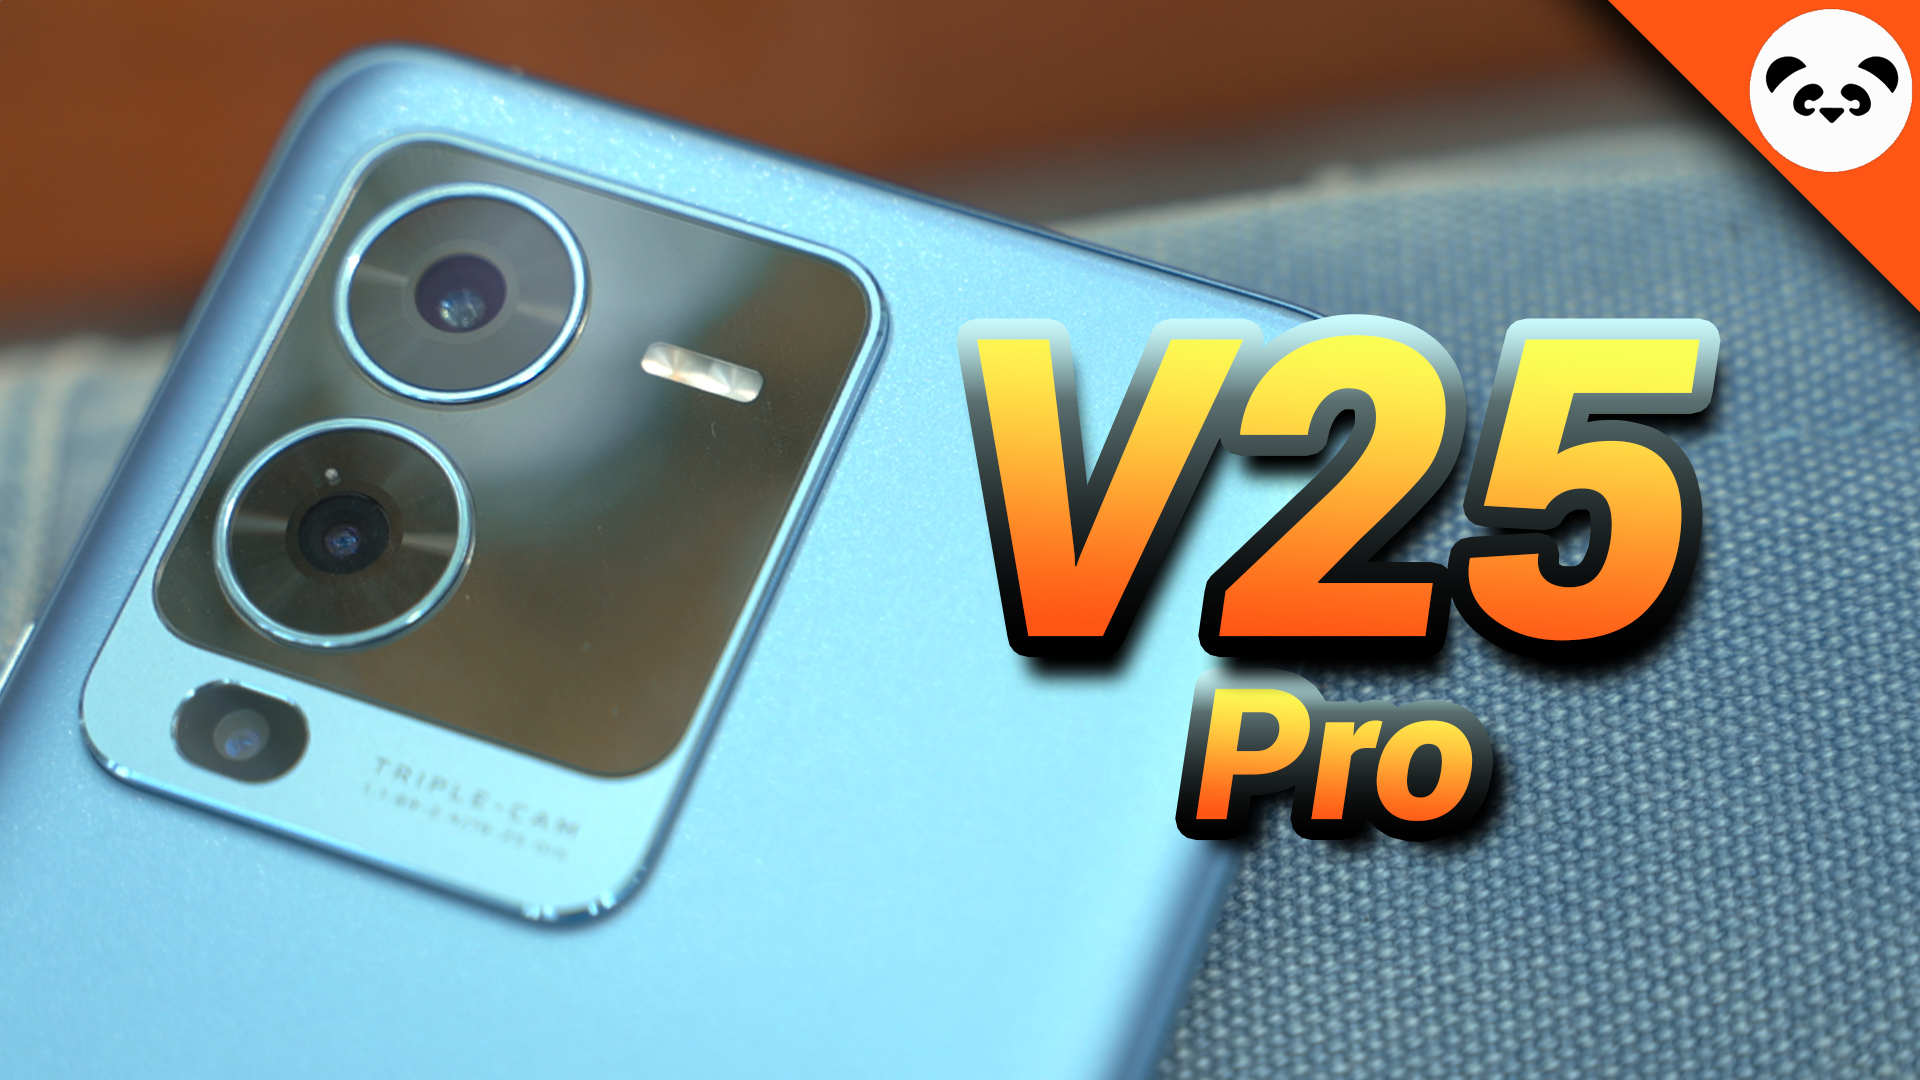 Vivo V25 Pro ကို ပြန်လည်ဆန်းစစ် ခြင်း-ကောင်းသော ကင်မရာ နှင့် ပြောင်းလဲ နေတဲ့ အရောင် များ